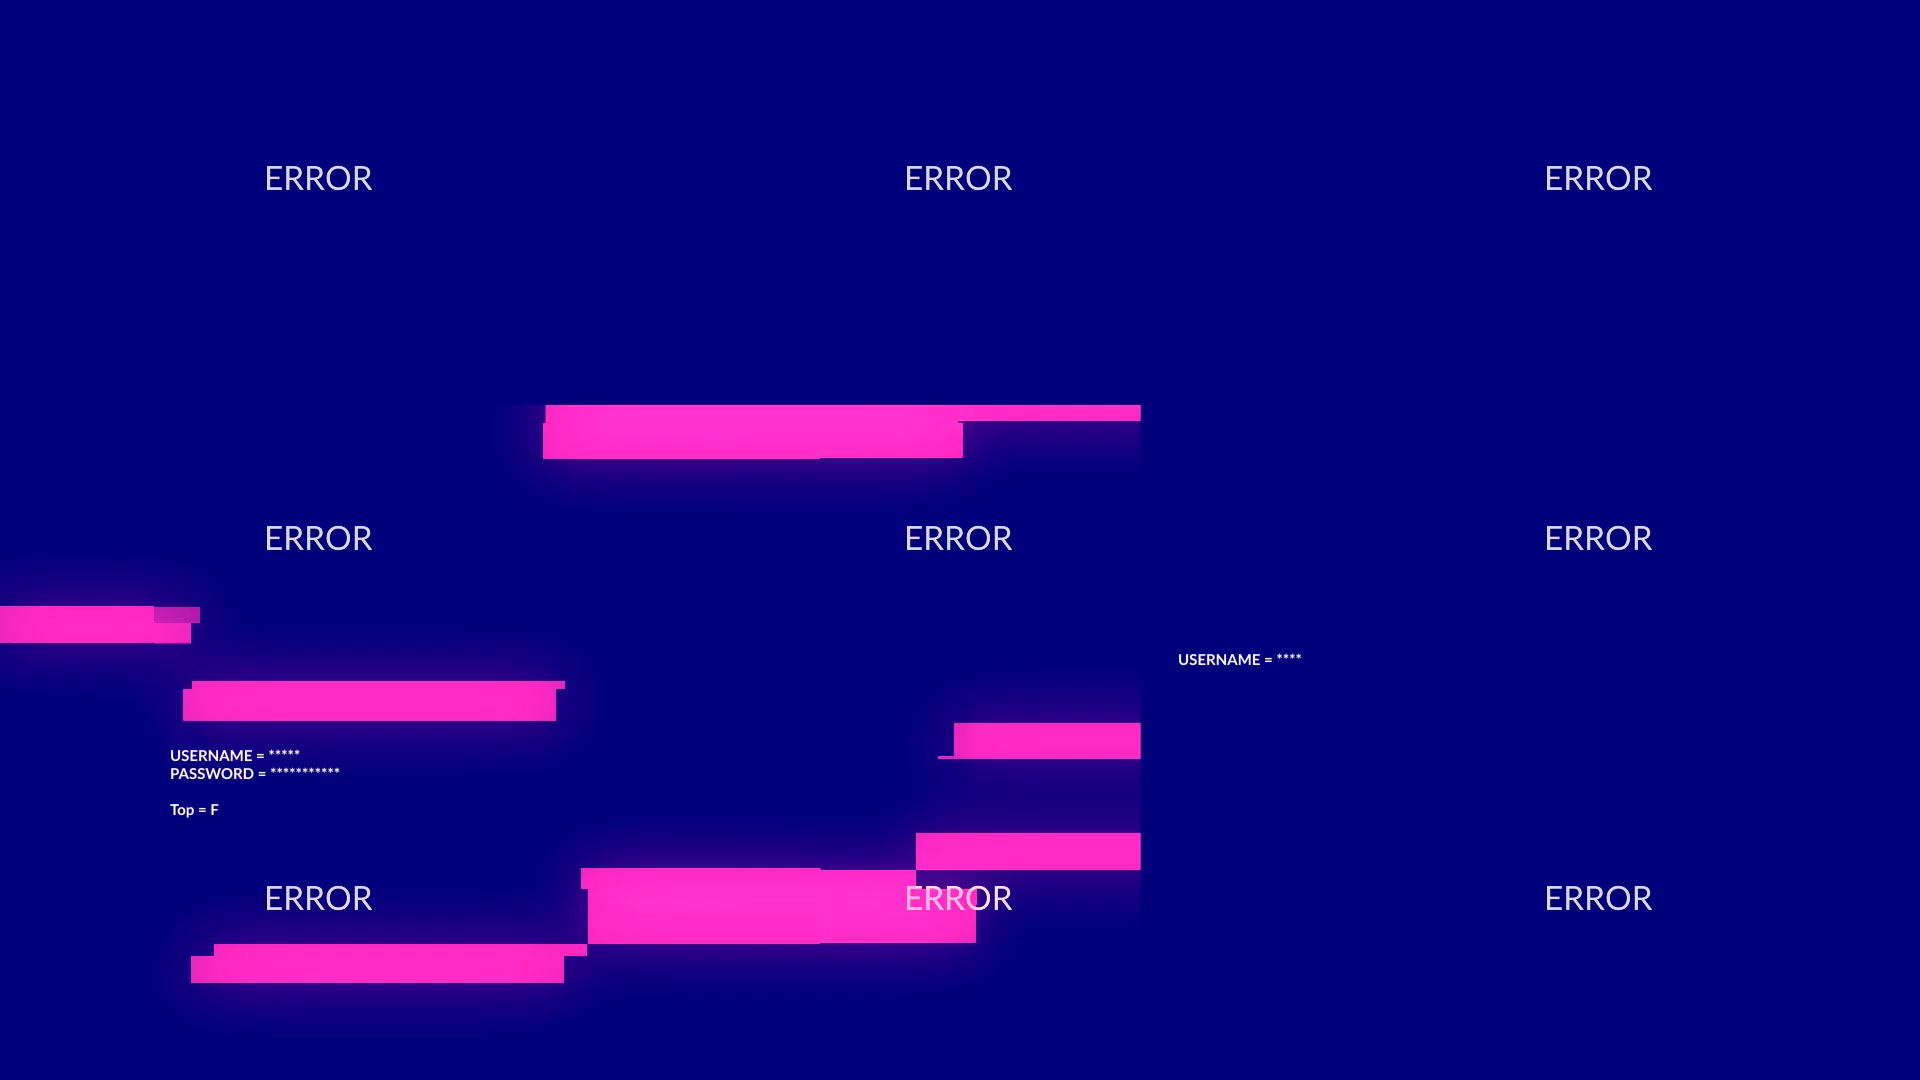 Error Messages Glitch Opener for Premiere Videohive 27911997 Premiere Pro Image 3